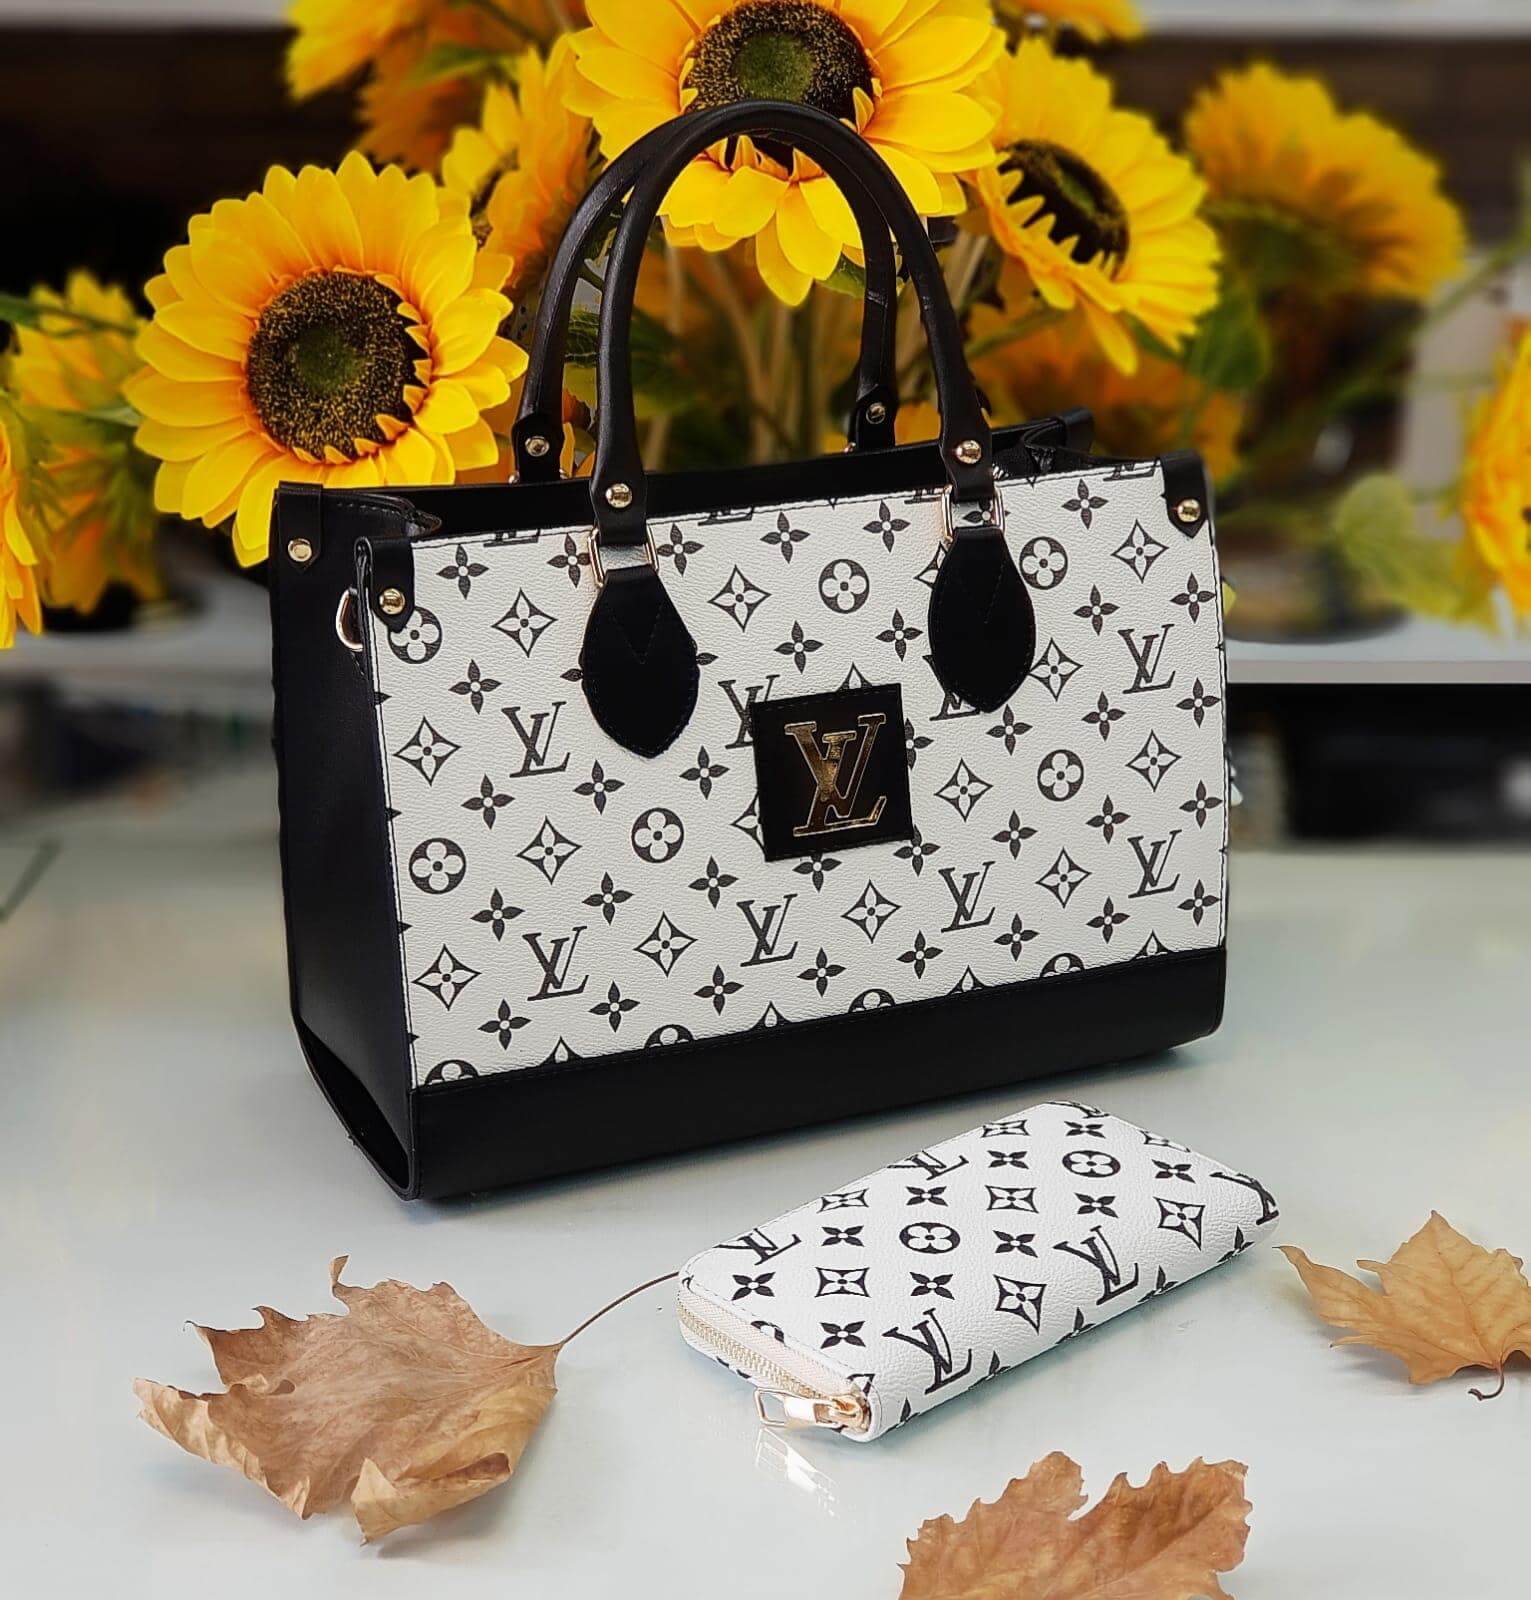 Louis Vuitton handbags